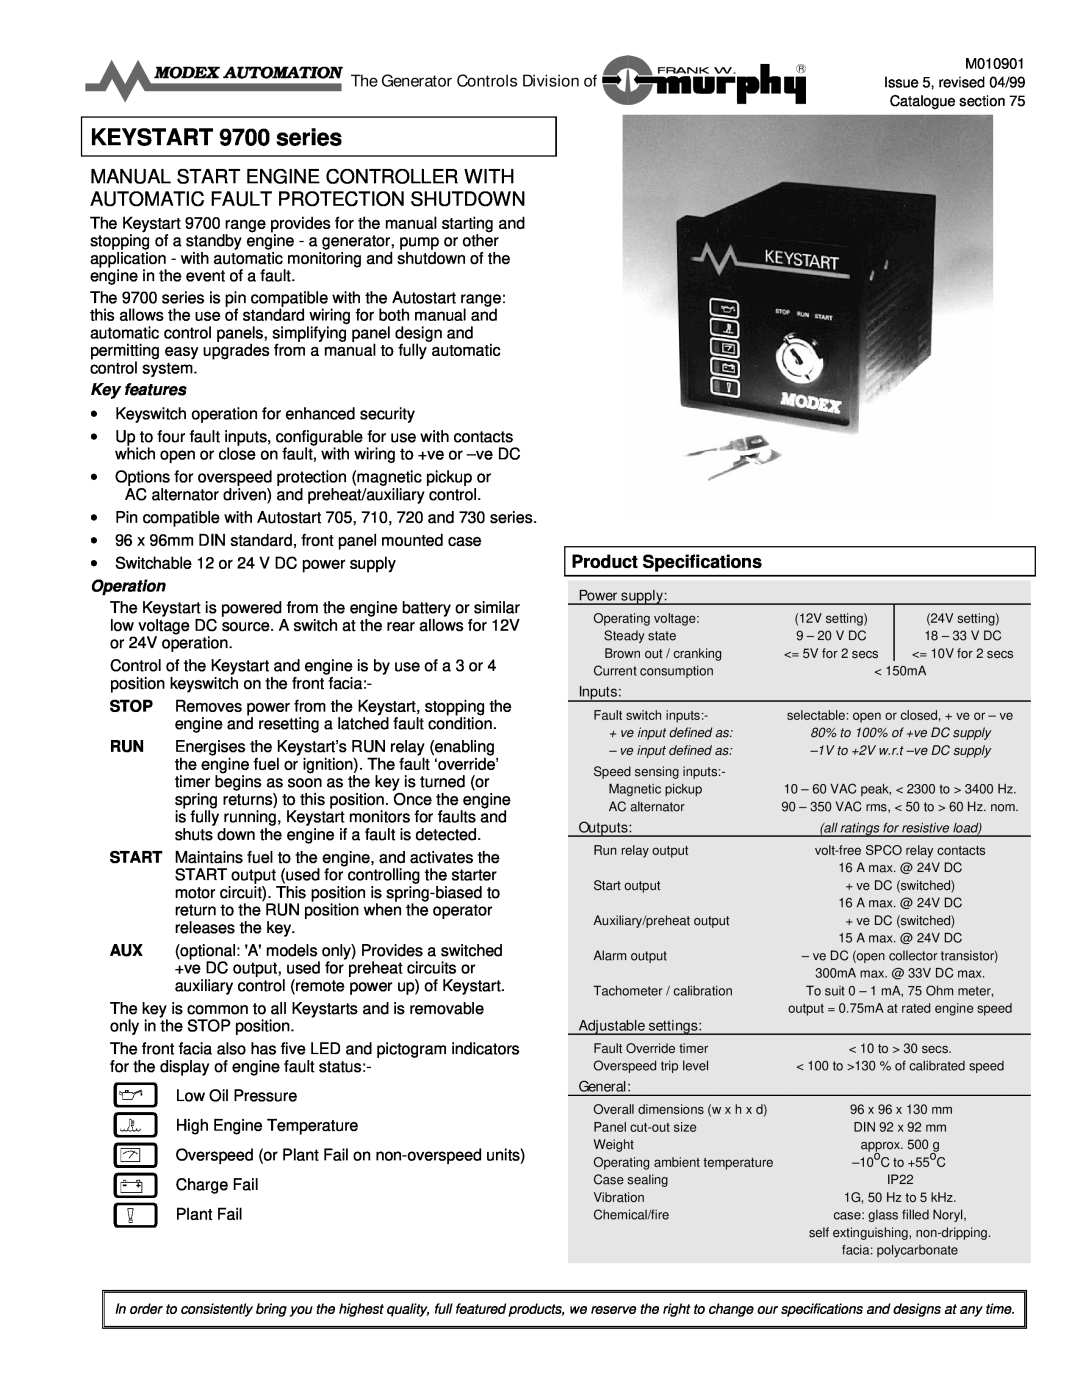 Murphy Keystart 9700 specifications M010901, Product Specifications, KEYSTART 9700 series, Key features, Operation, Inputs 